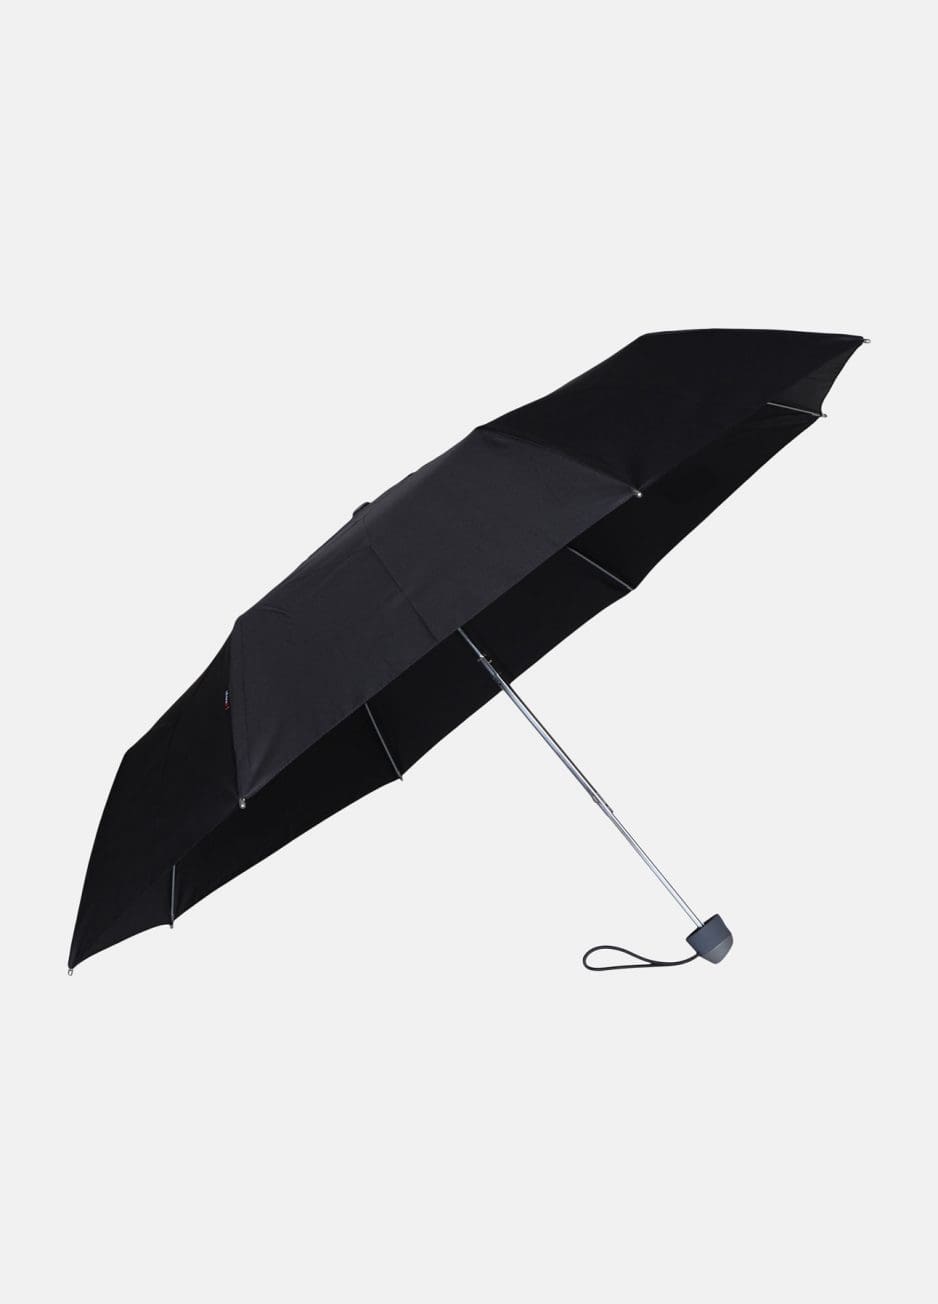 Sort manual paraply fra Knirps